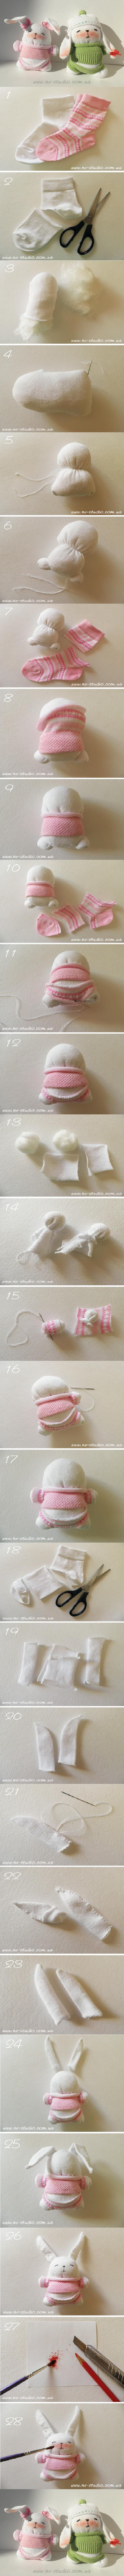 DIY Little Sock Rabbit